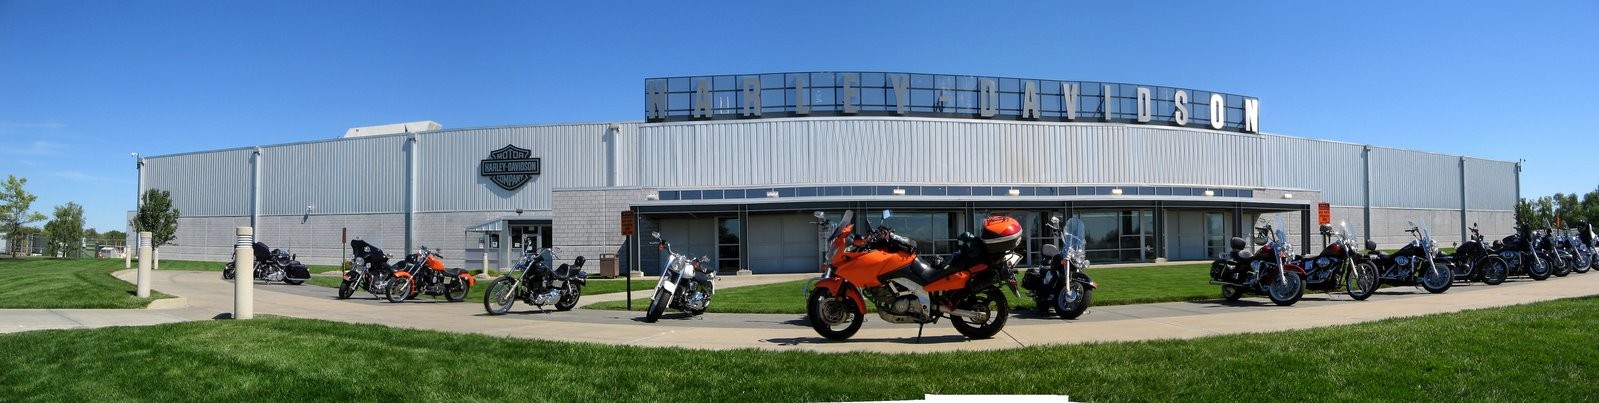 Компания Harley-Davidson сократит 169 рабочих